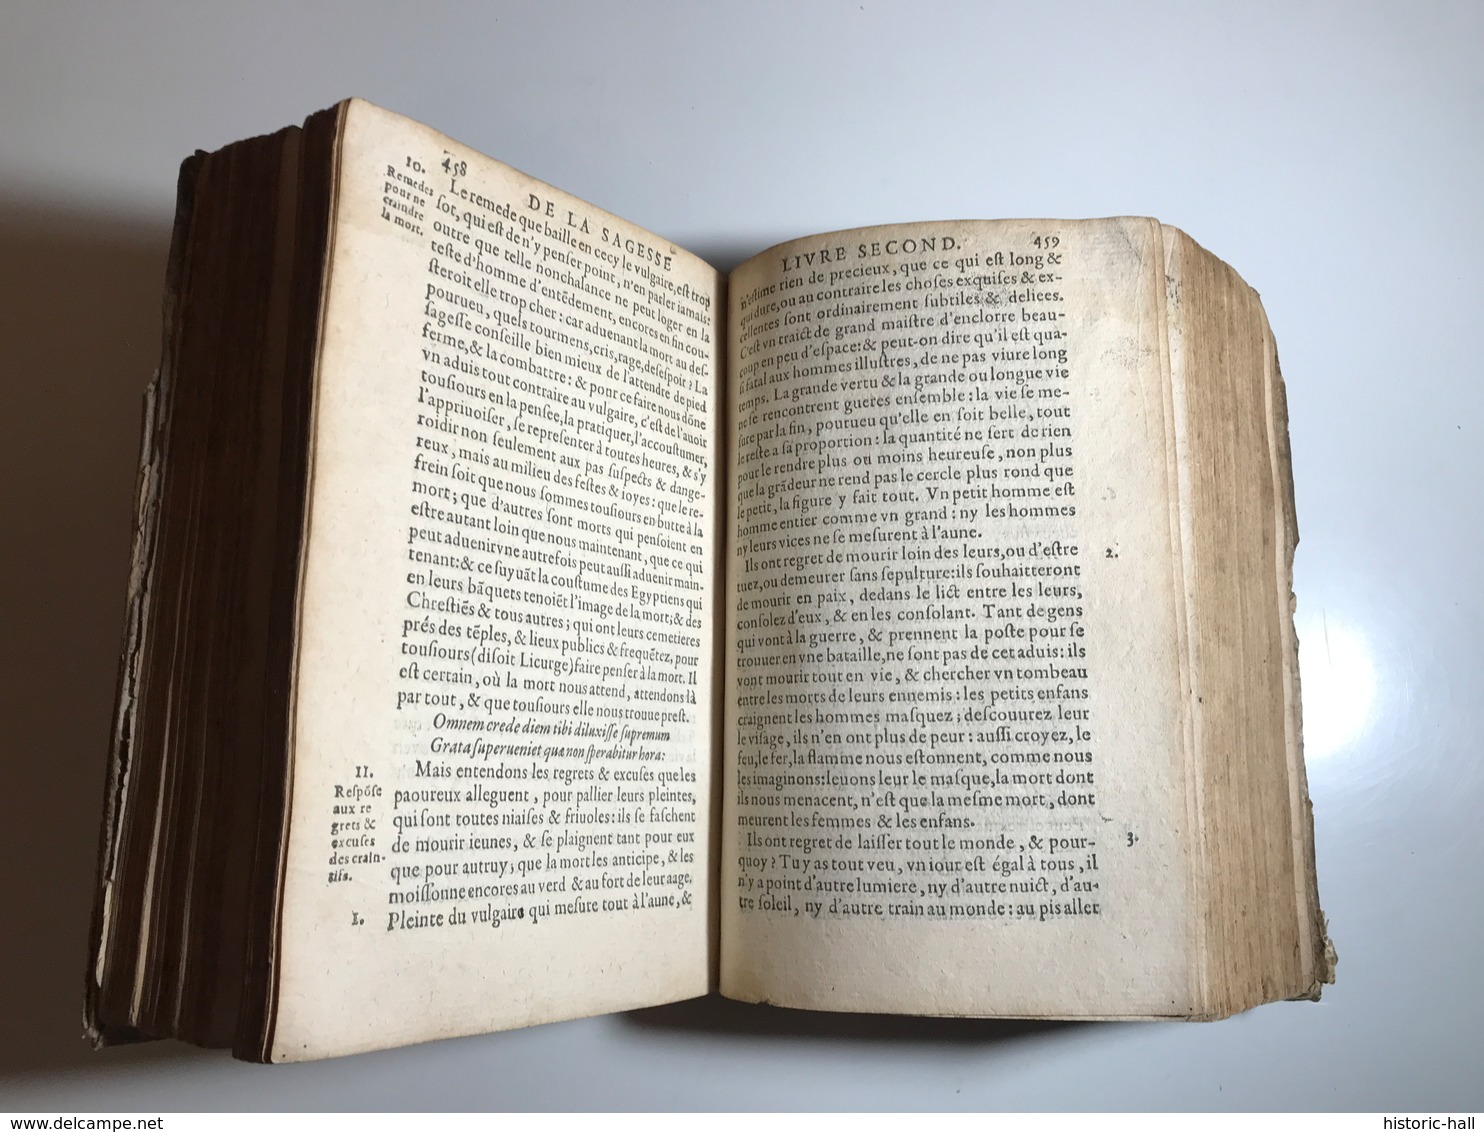 De La Sagesse - 1622 - Trois Livres - CHARON Pierre - Jusque 1700